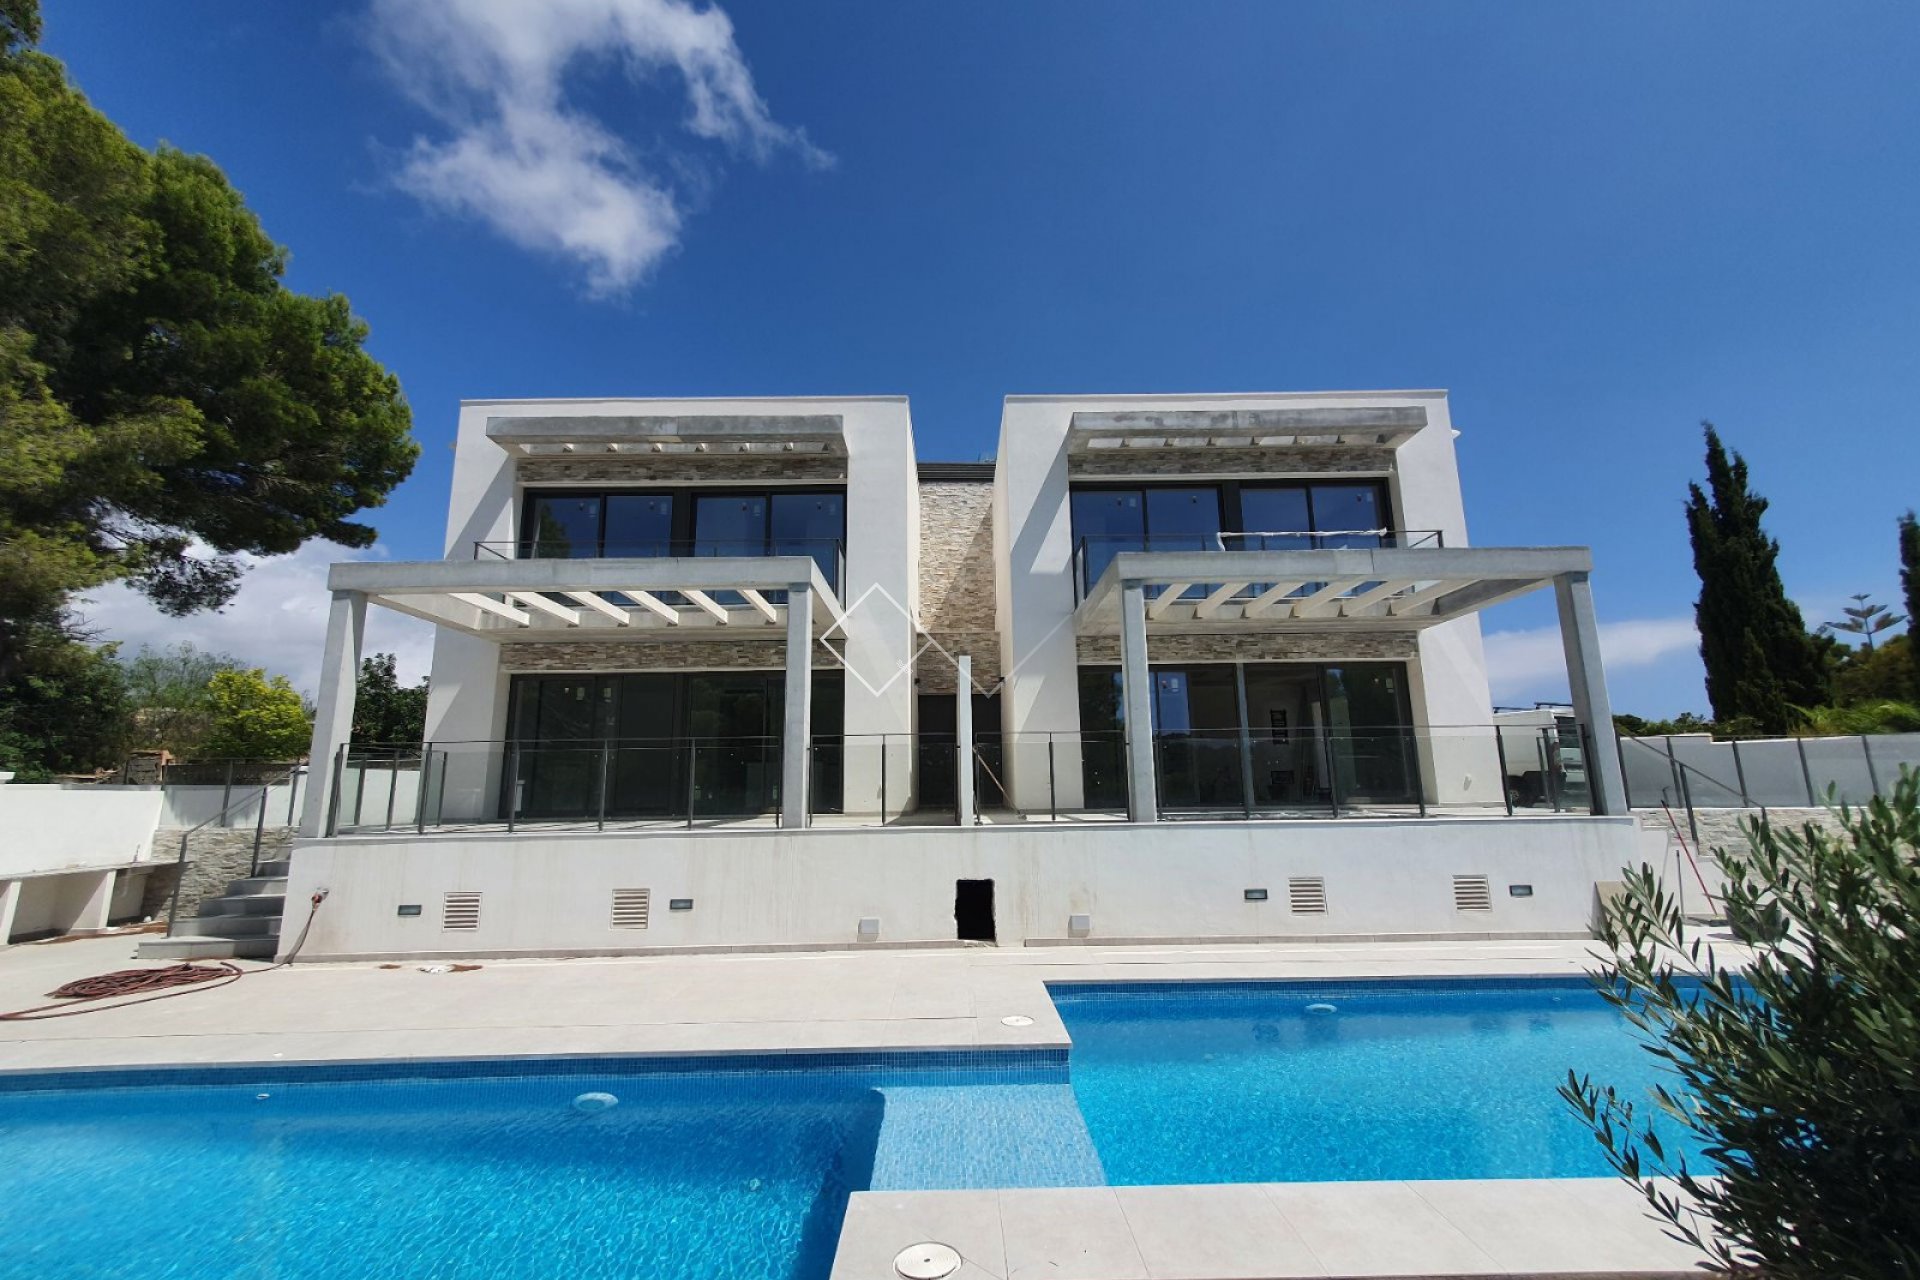 piscina y villas - Chalet moderno adosado en construcción en Moraira